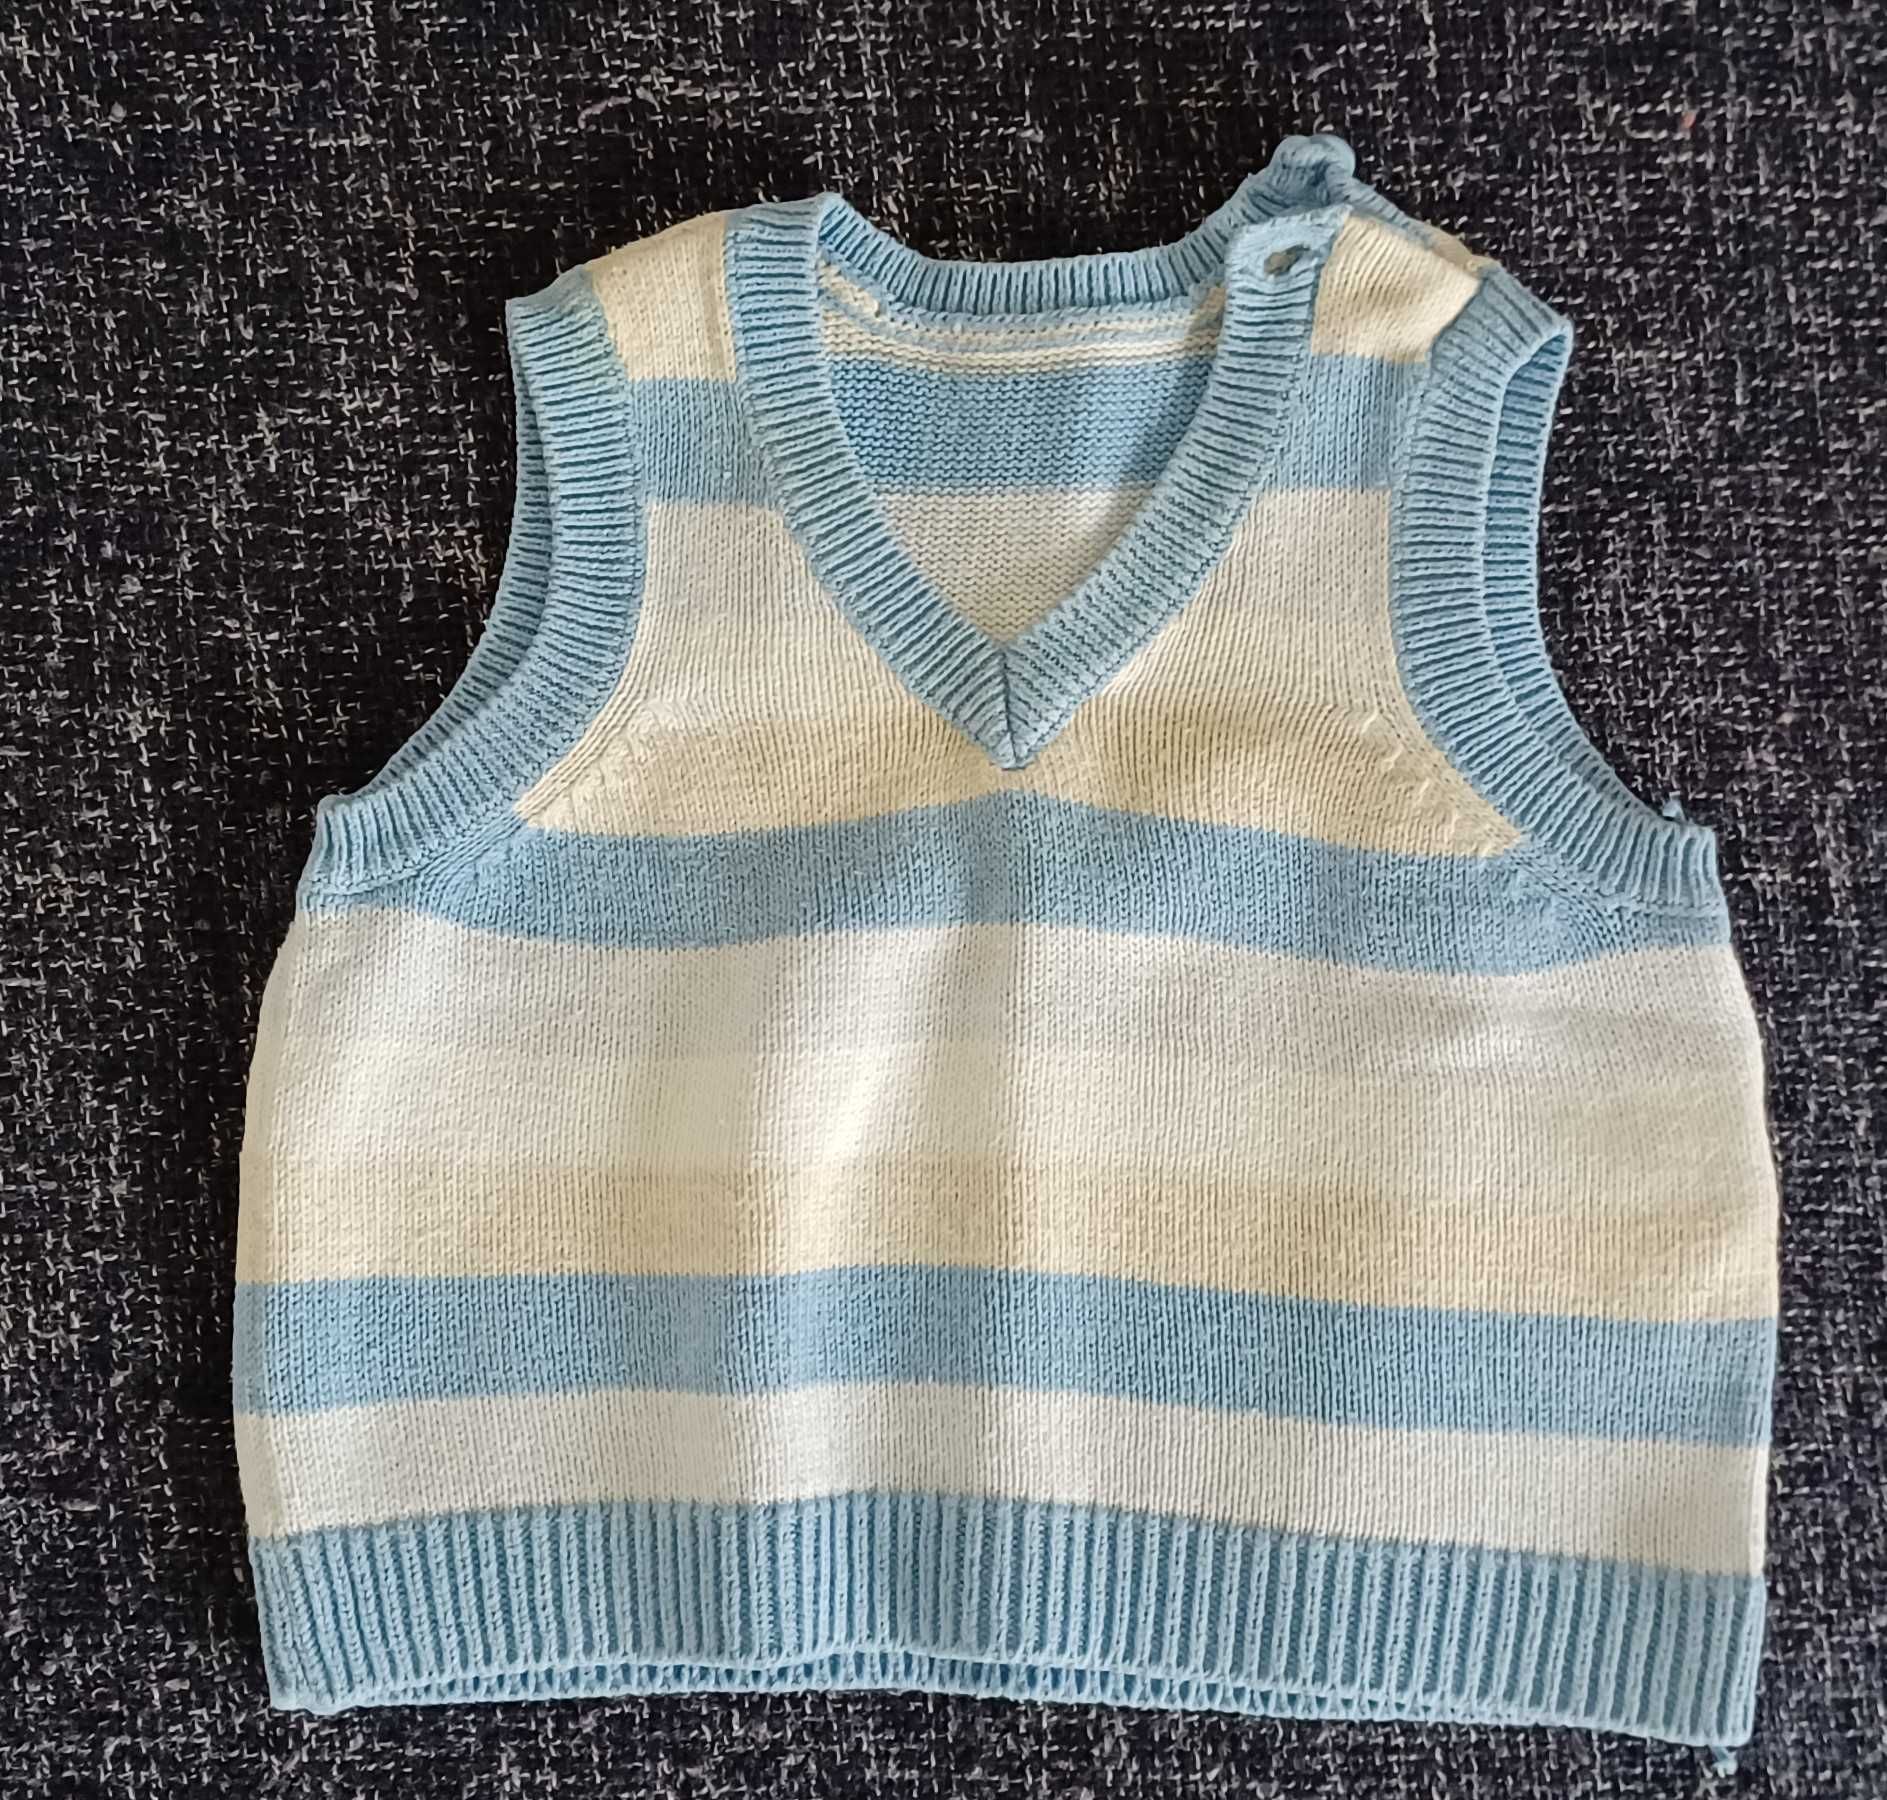 Sweterki kaftaniki dziecięce niemowlęce, rozmiar 56 zestaw 7 sztuk